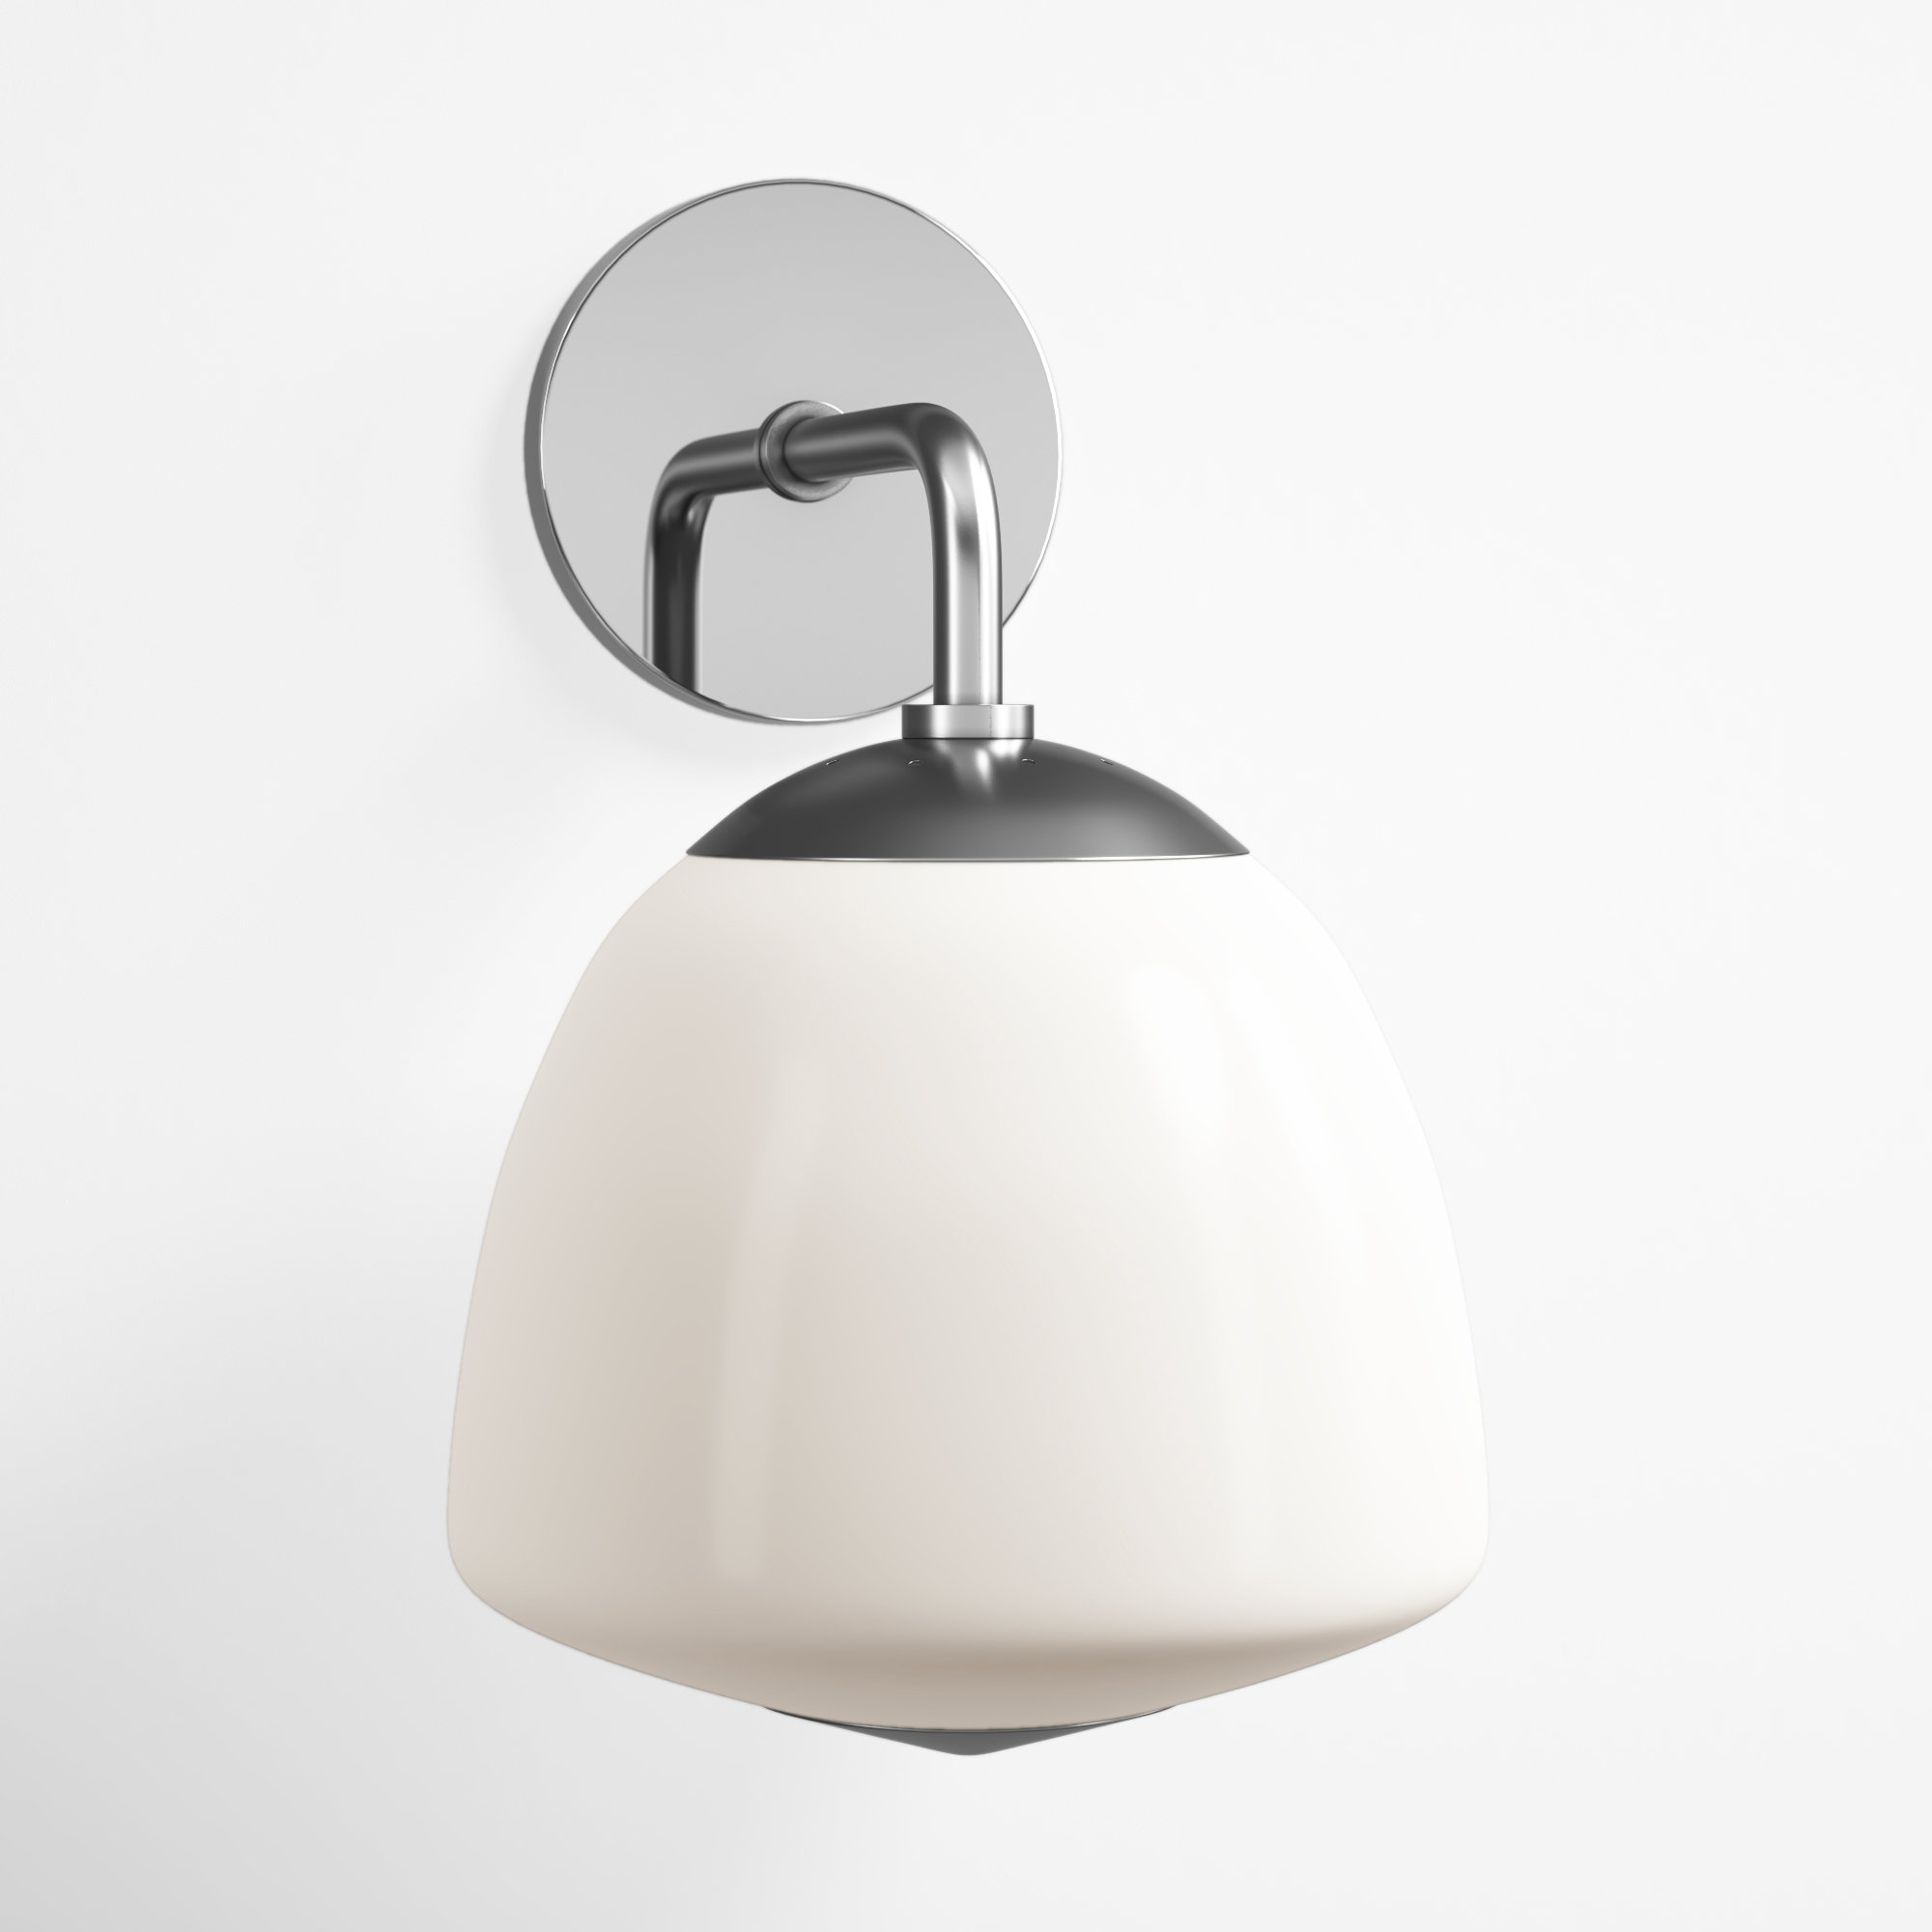 Light Au Lait designer wall lamp